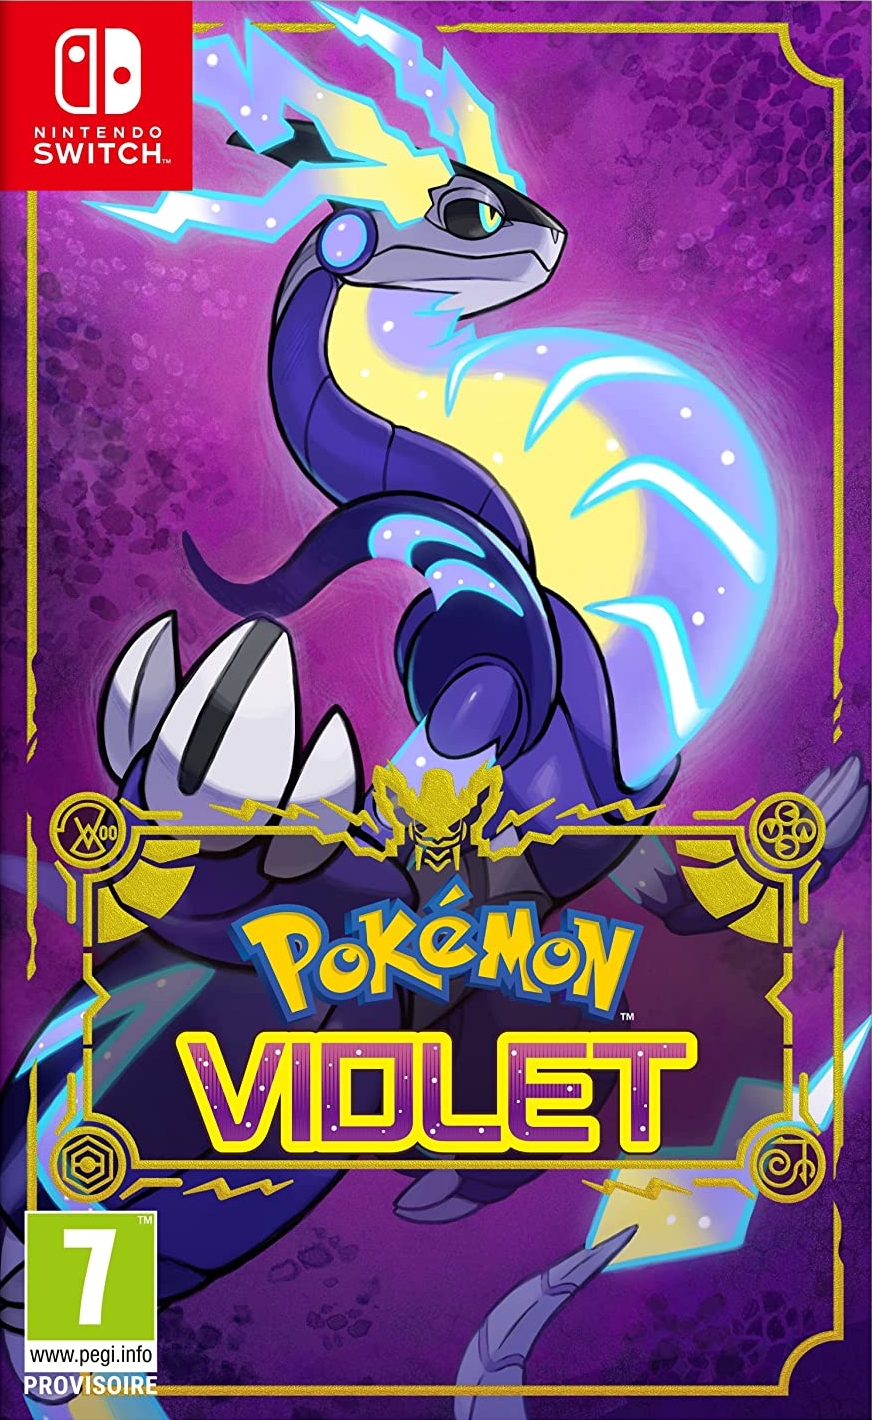 jaquette reduite de Pokémon Violet sur Switch